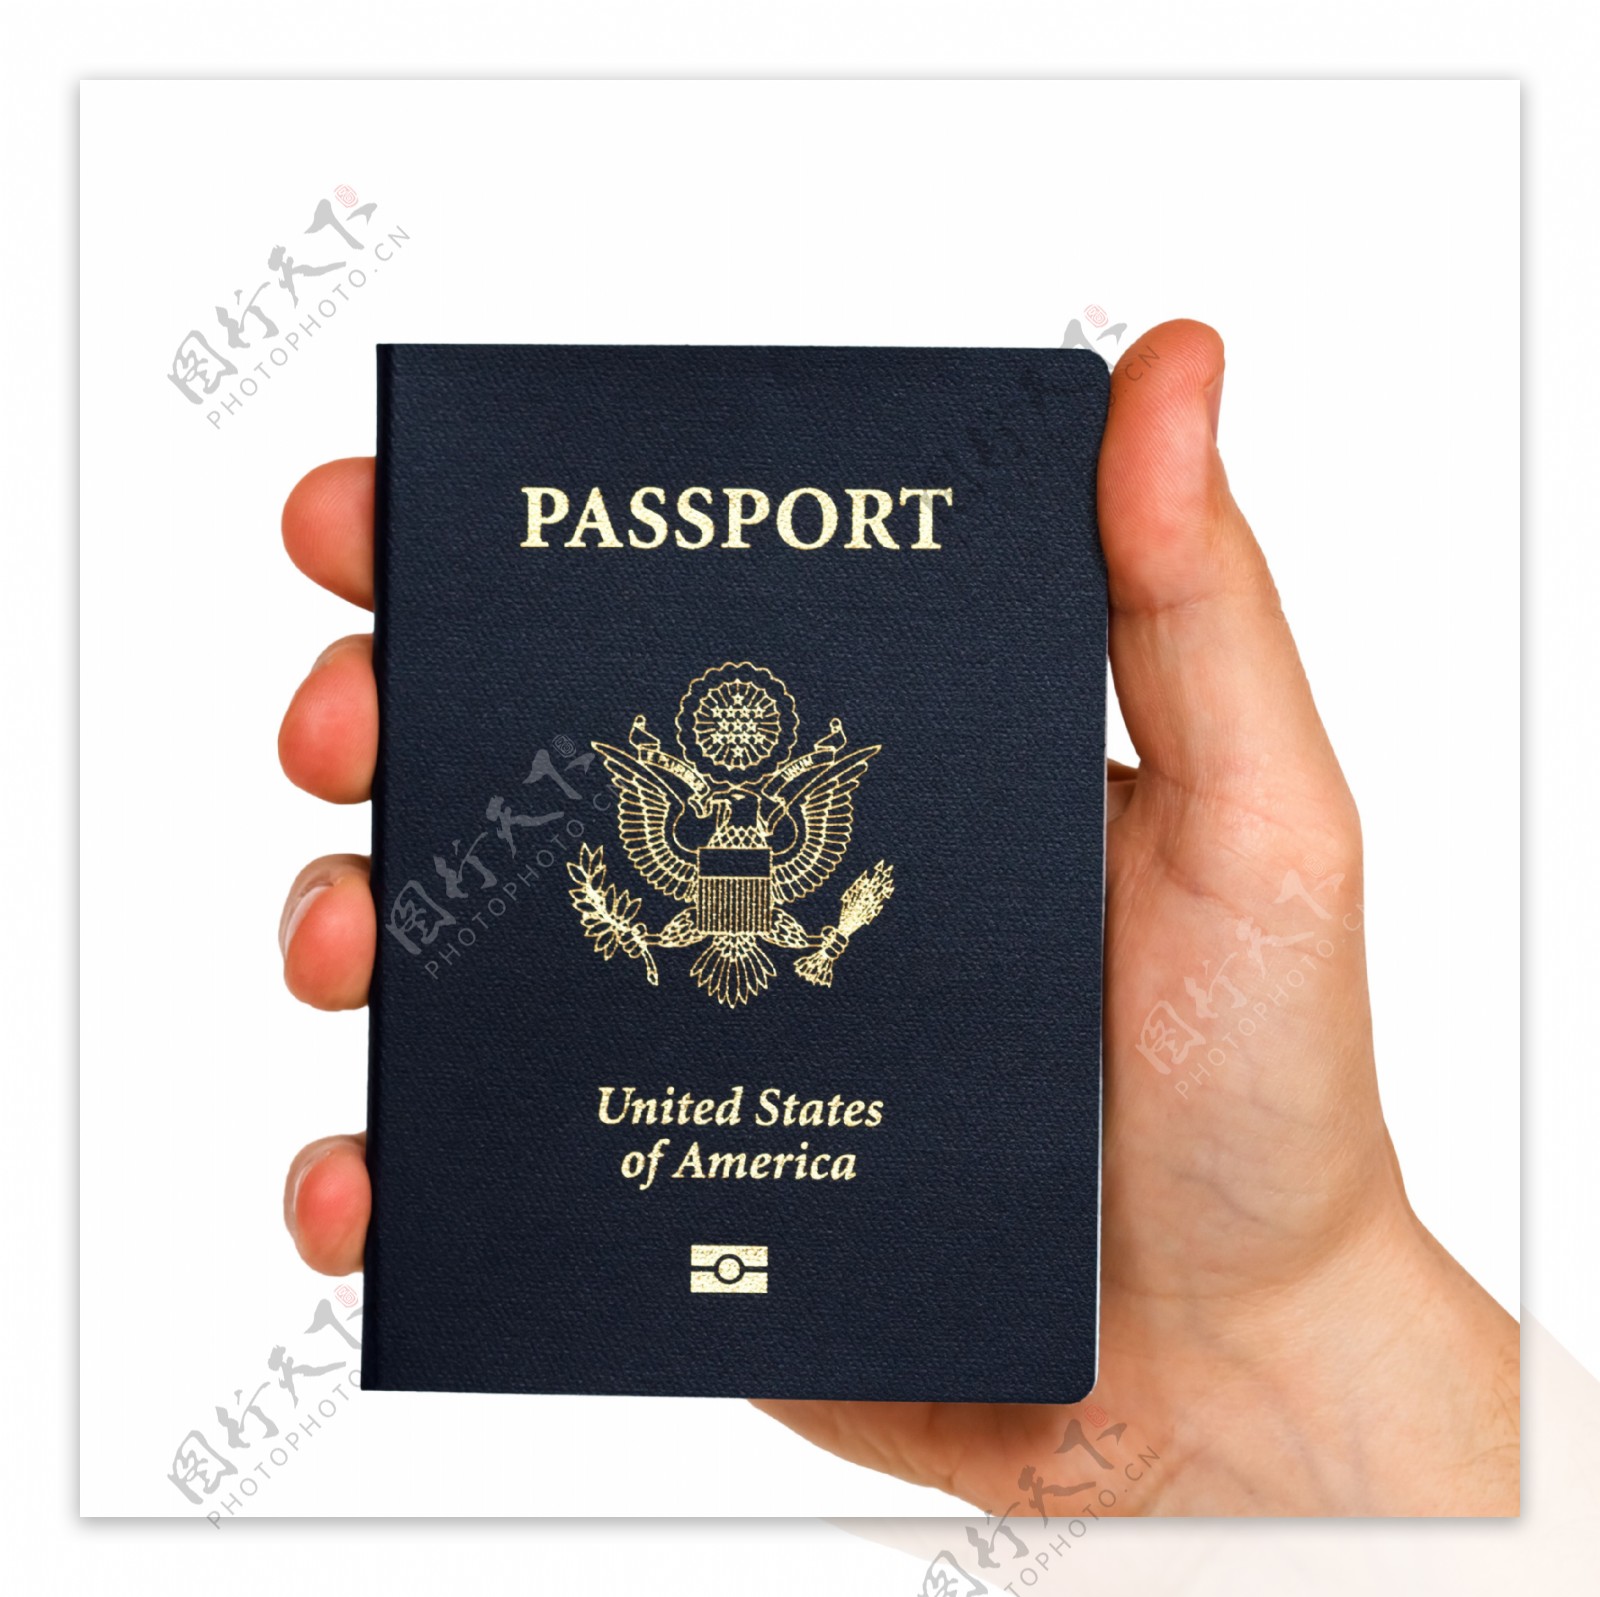 拿美国护照的手图片